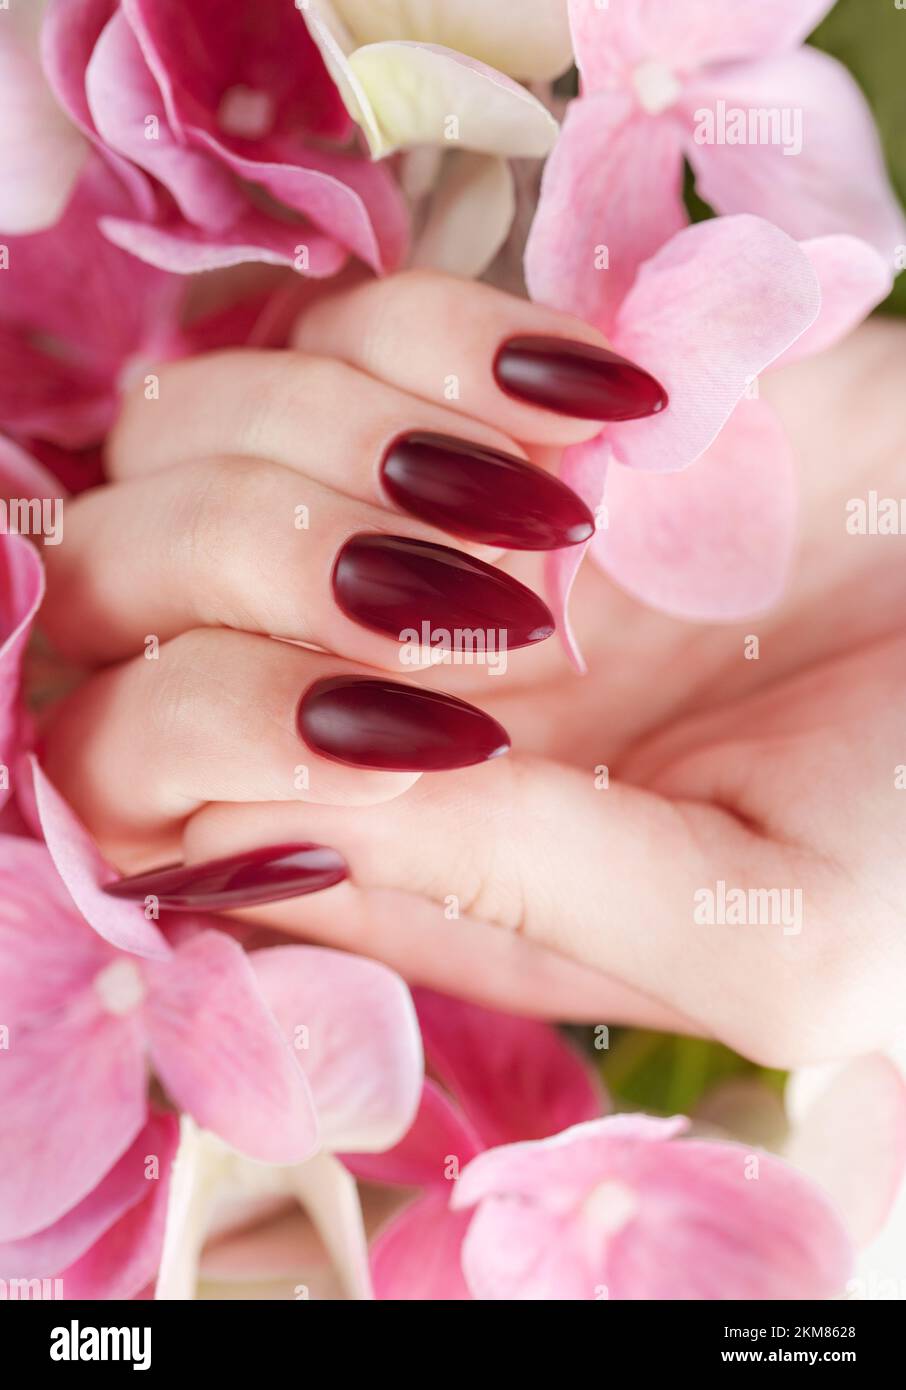 Belle mani di una giovane donna con manicure rosso scuro sulle unghie. Le mani femminili che tengono un fiore di hydrangea Foto Stock